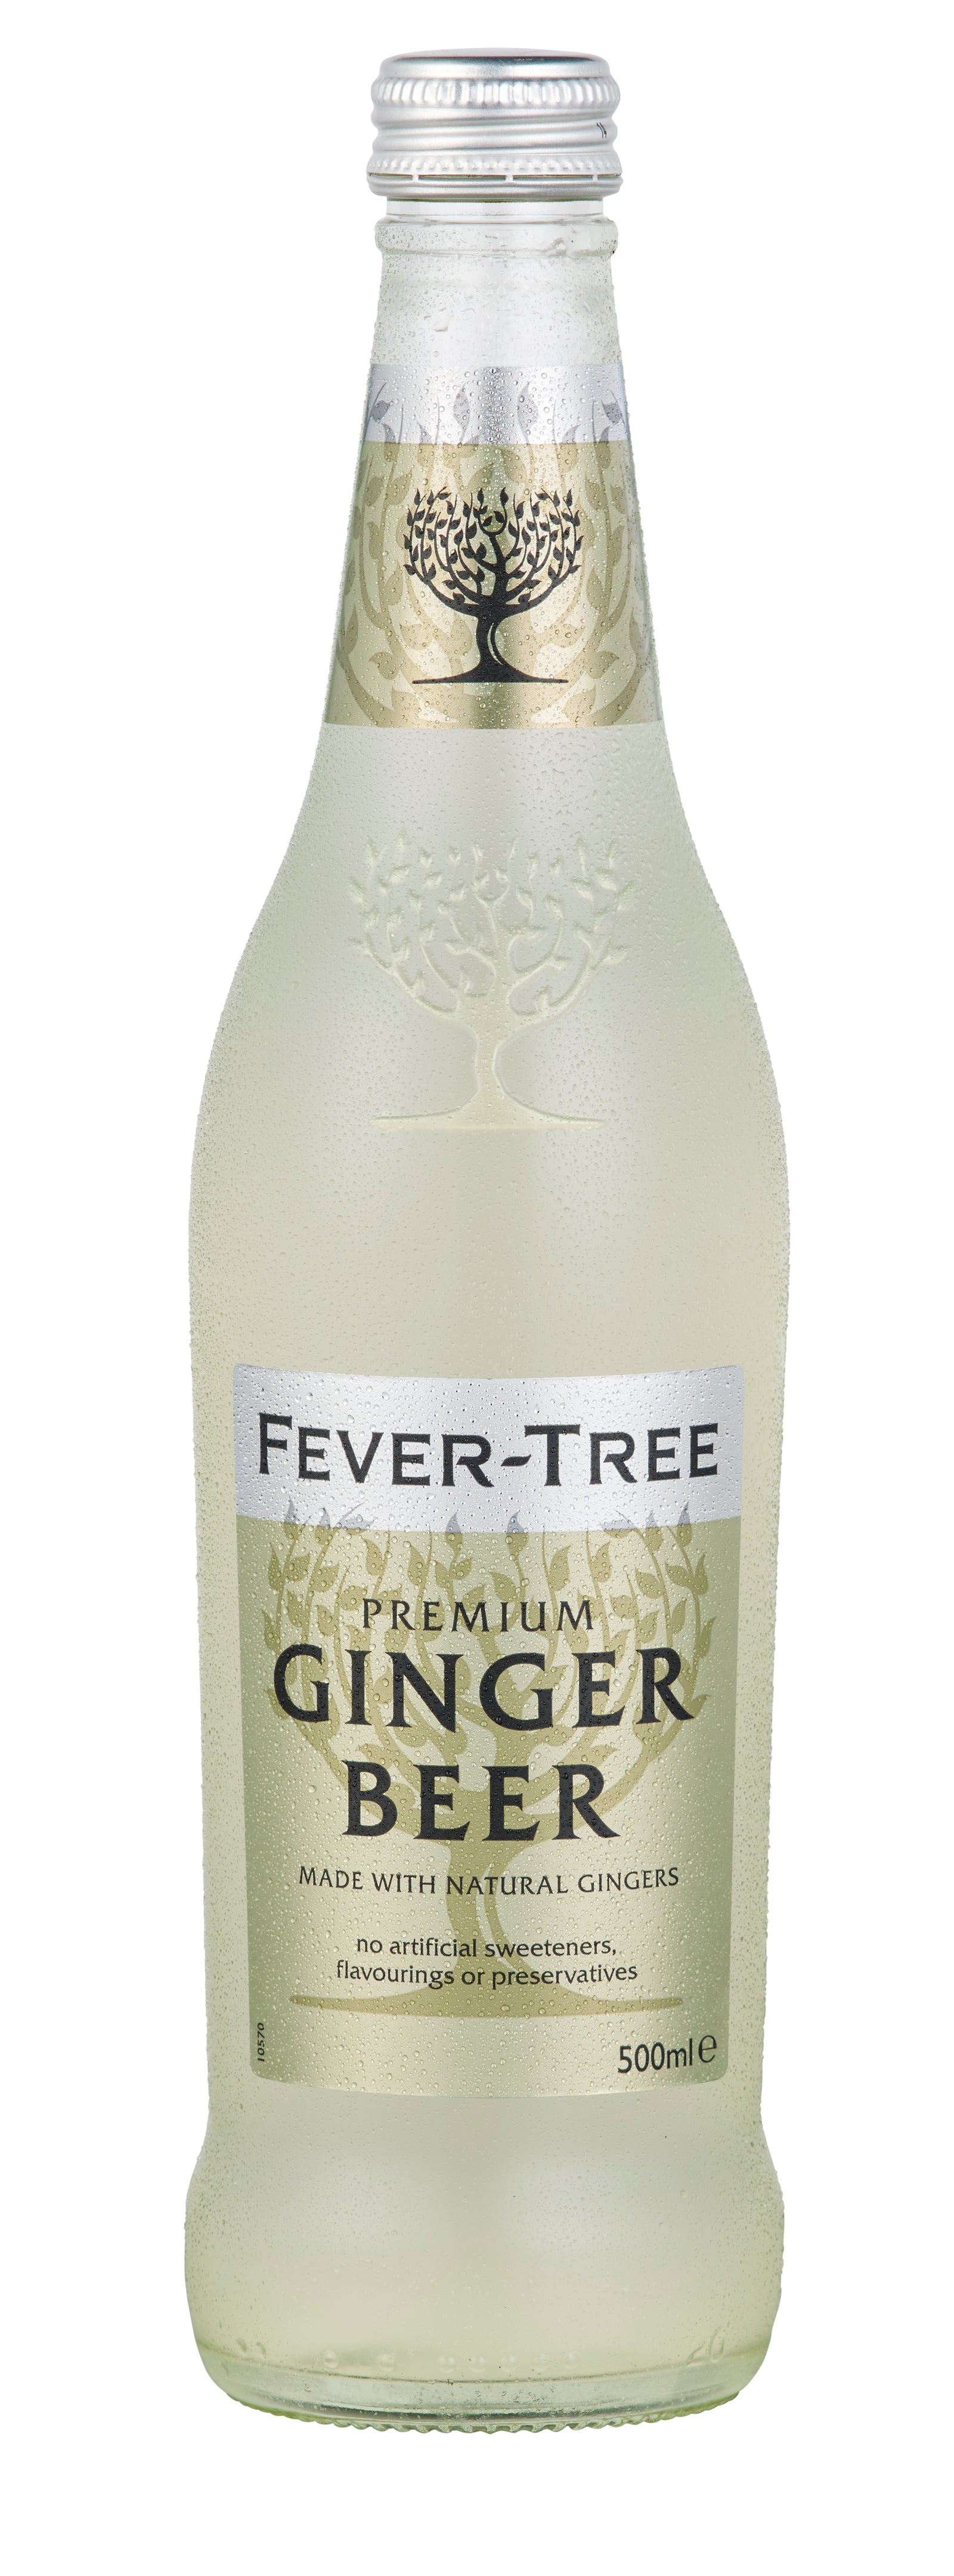 Beaver Tree Ginger Beer - KibrisPDR